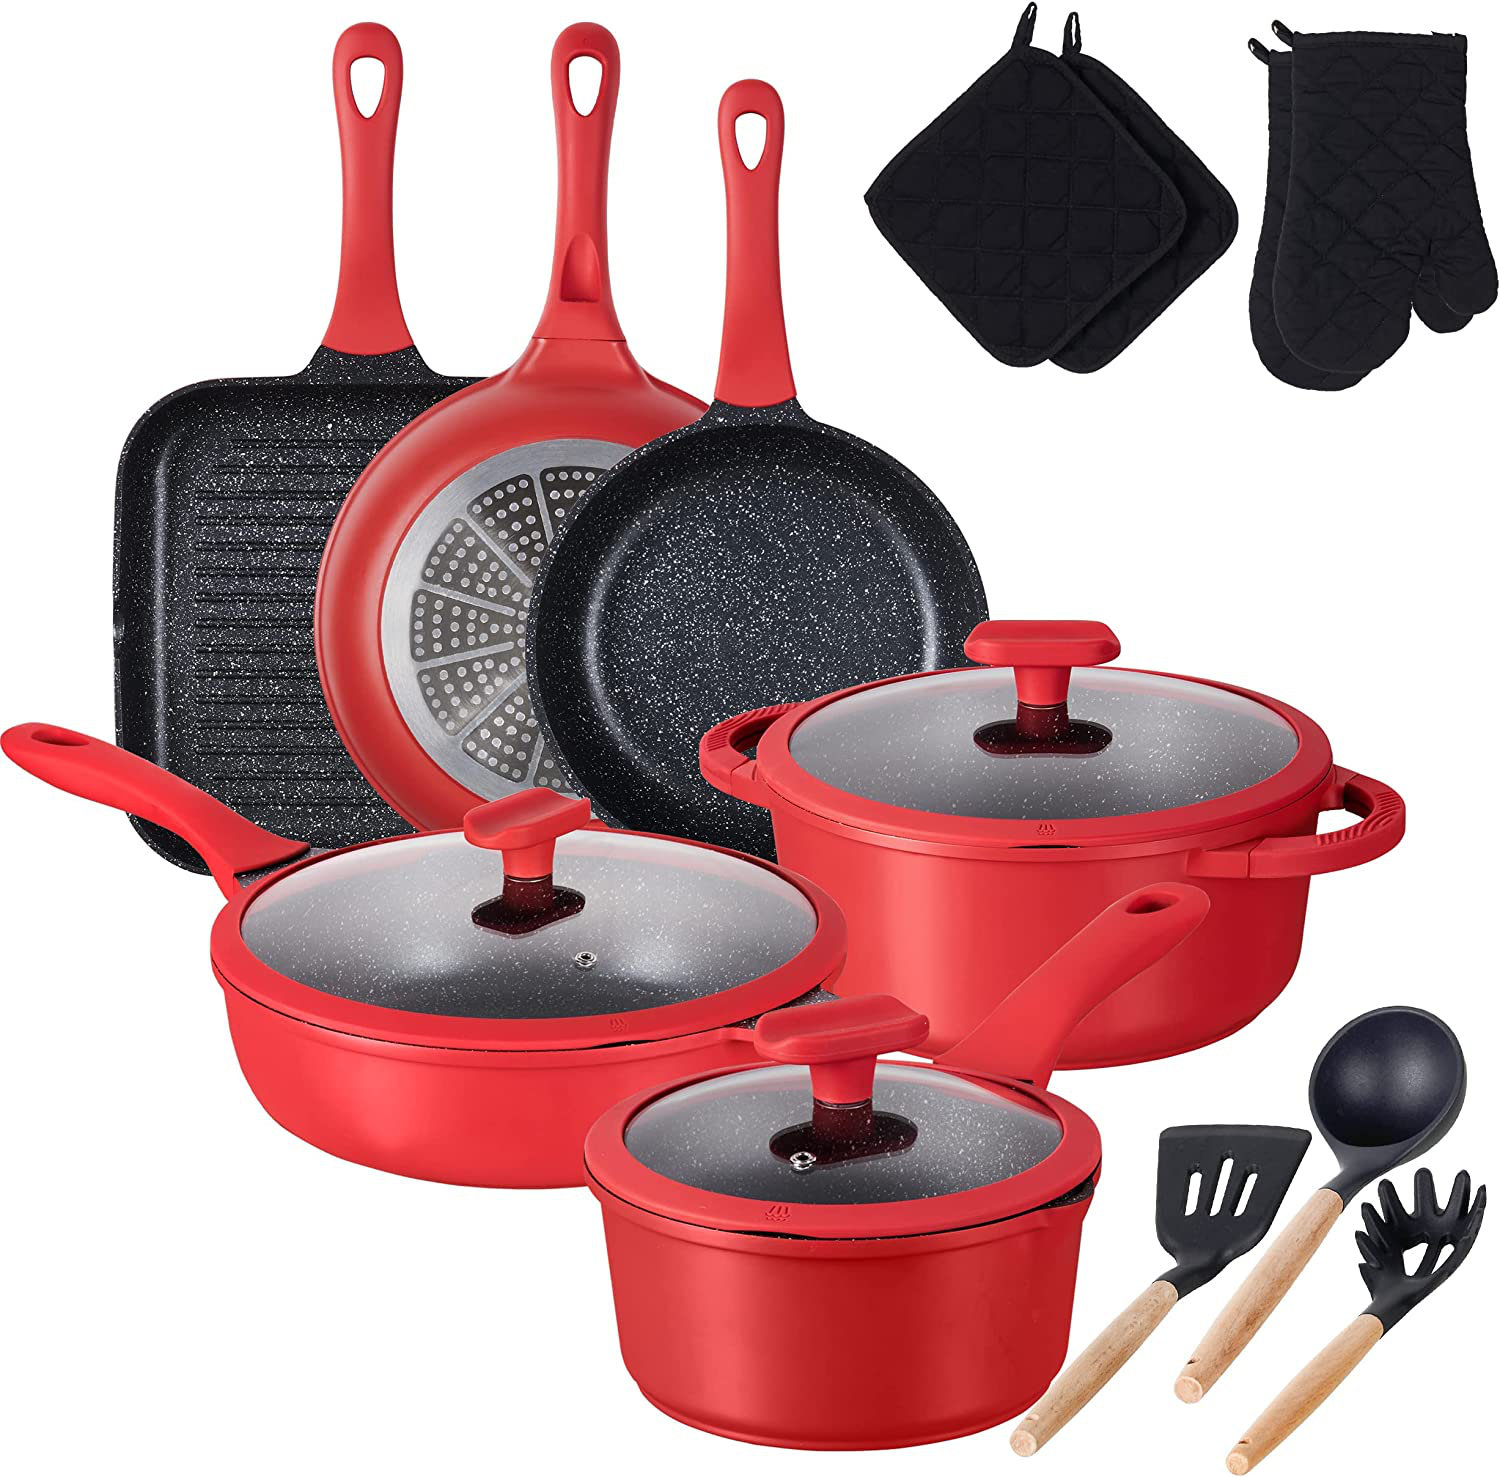 https://assets.wfcdn.com/im/21999458/compr-r85/2403/240339290/16-piece-non-stick-aluminum-cookware-set.jpg